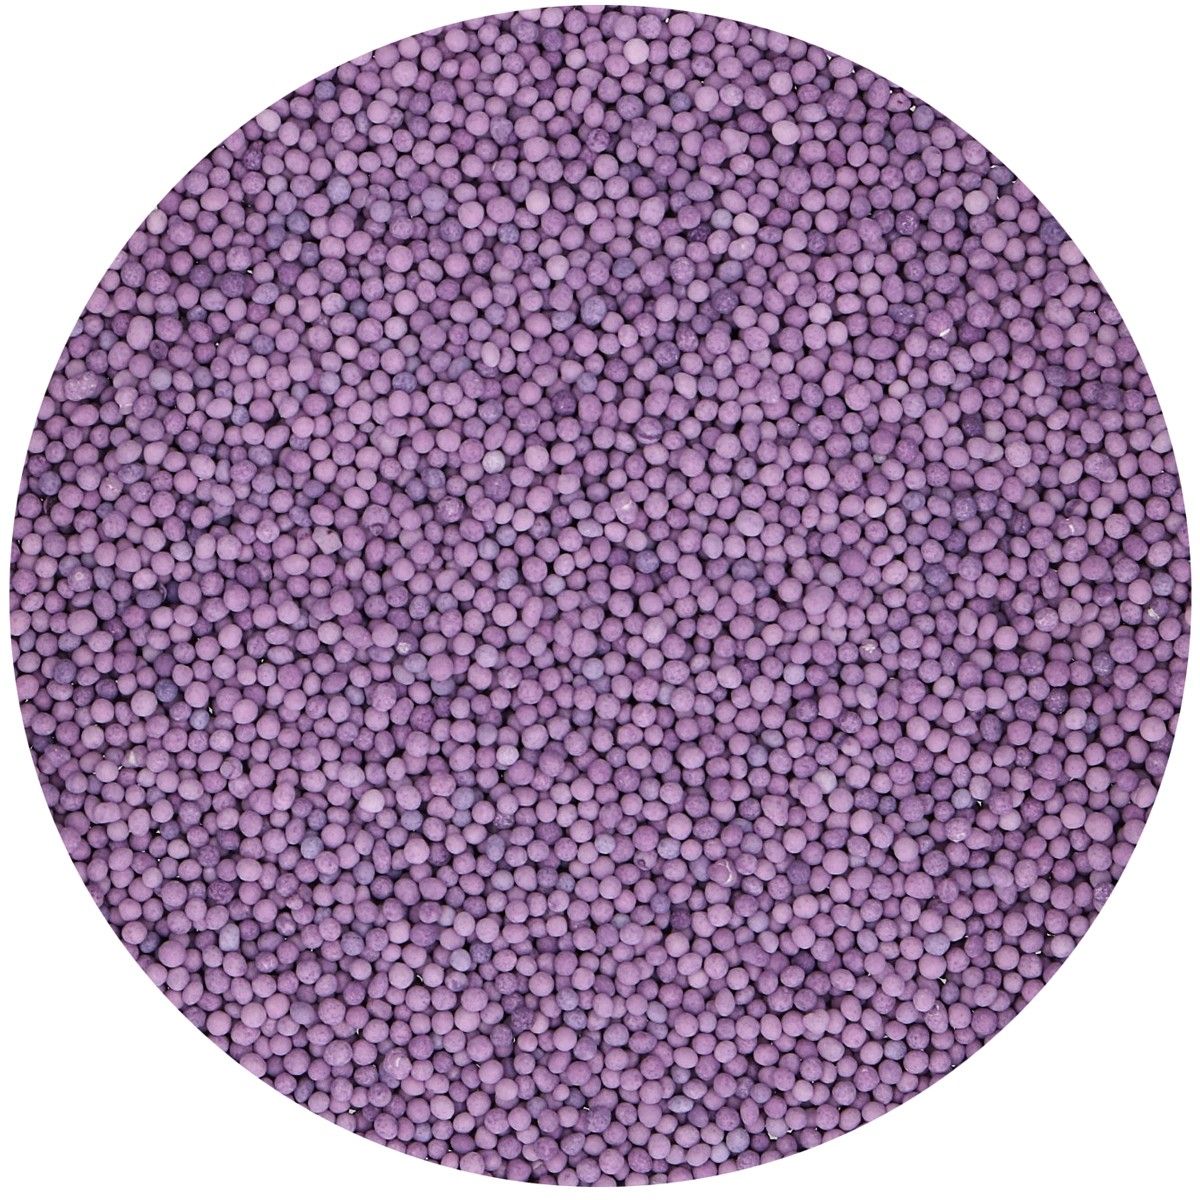 FunCakes Nonpareils Purple 80g